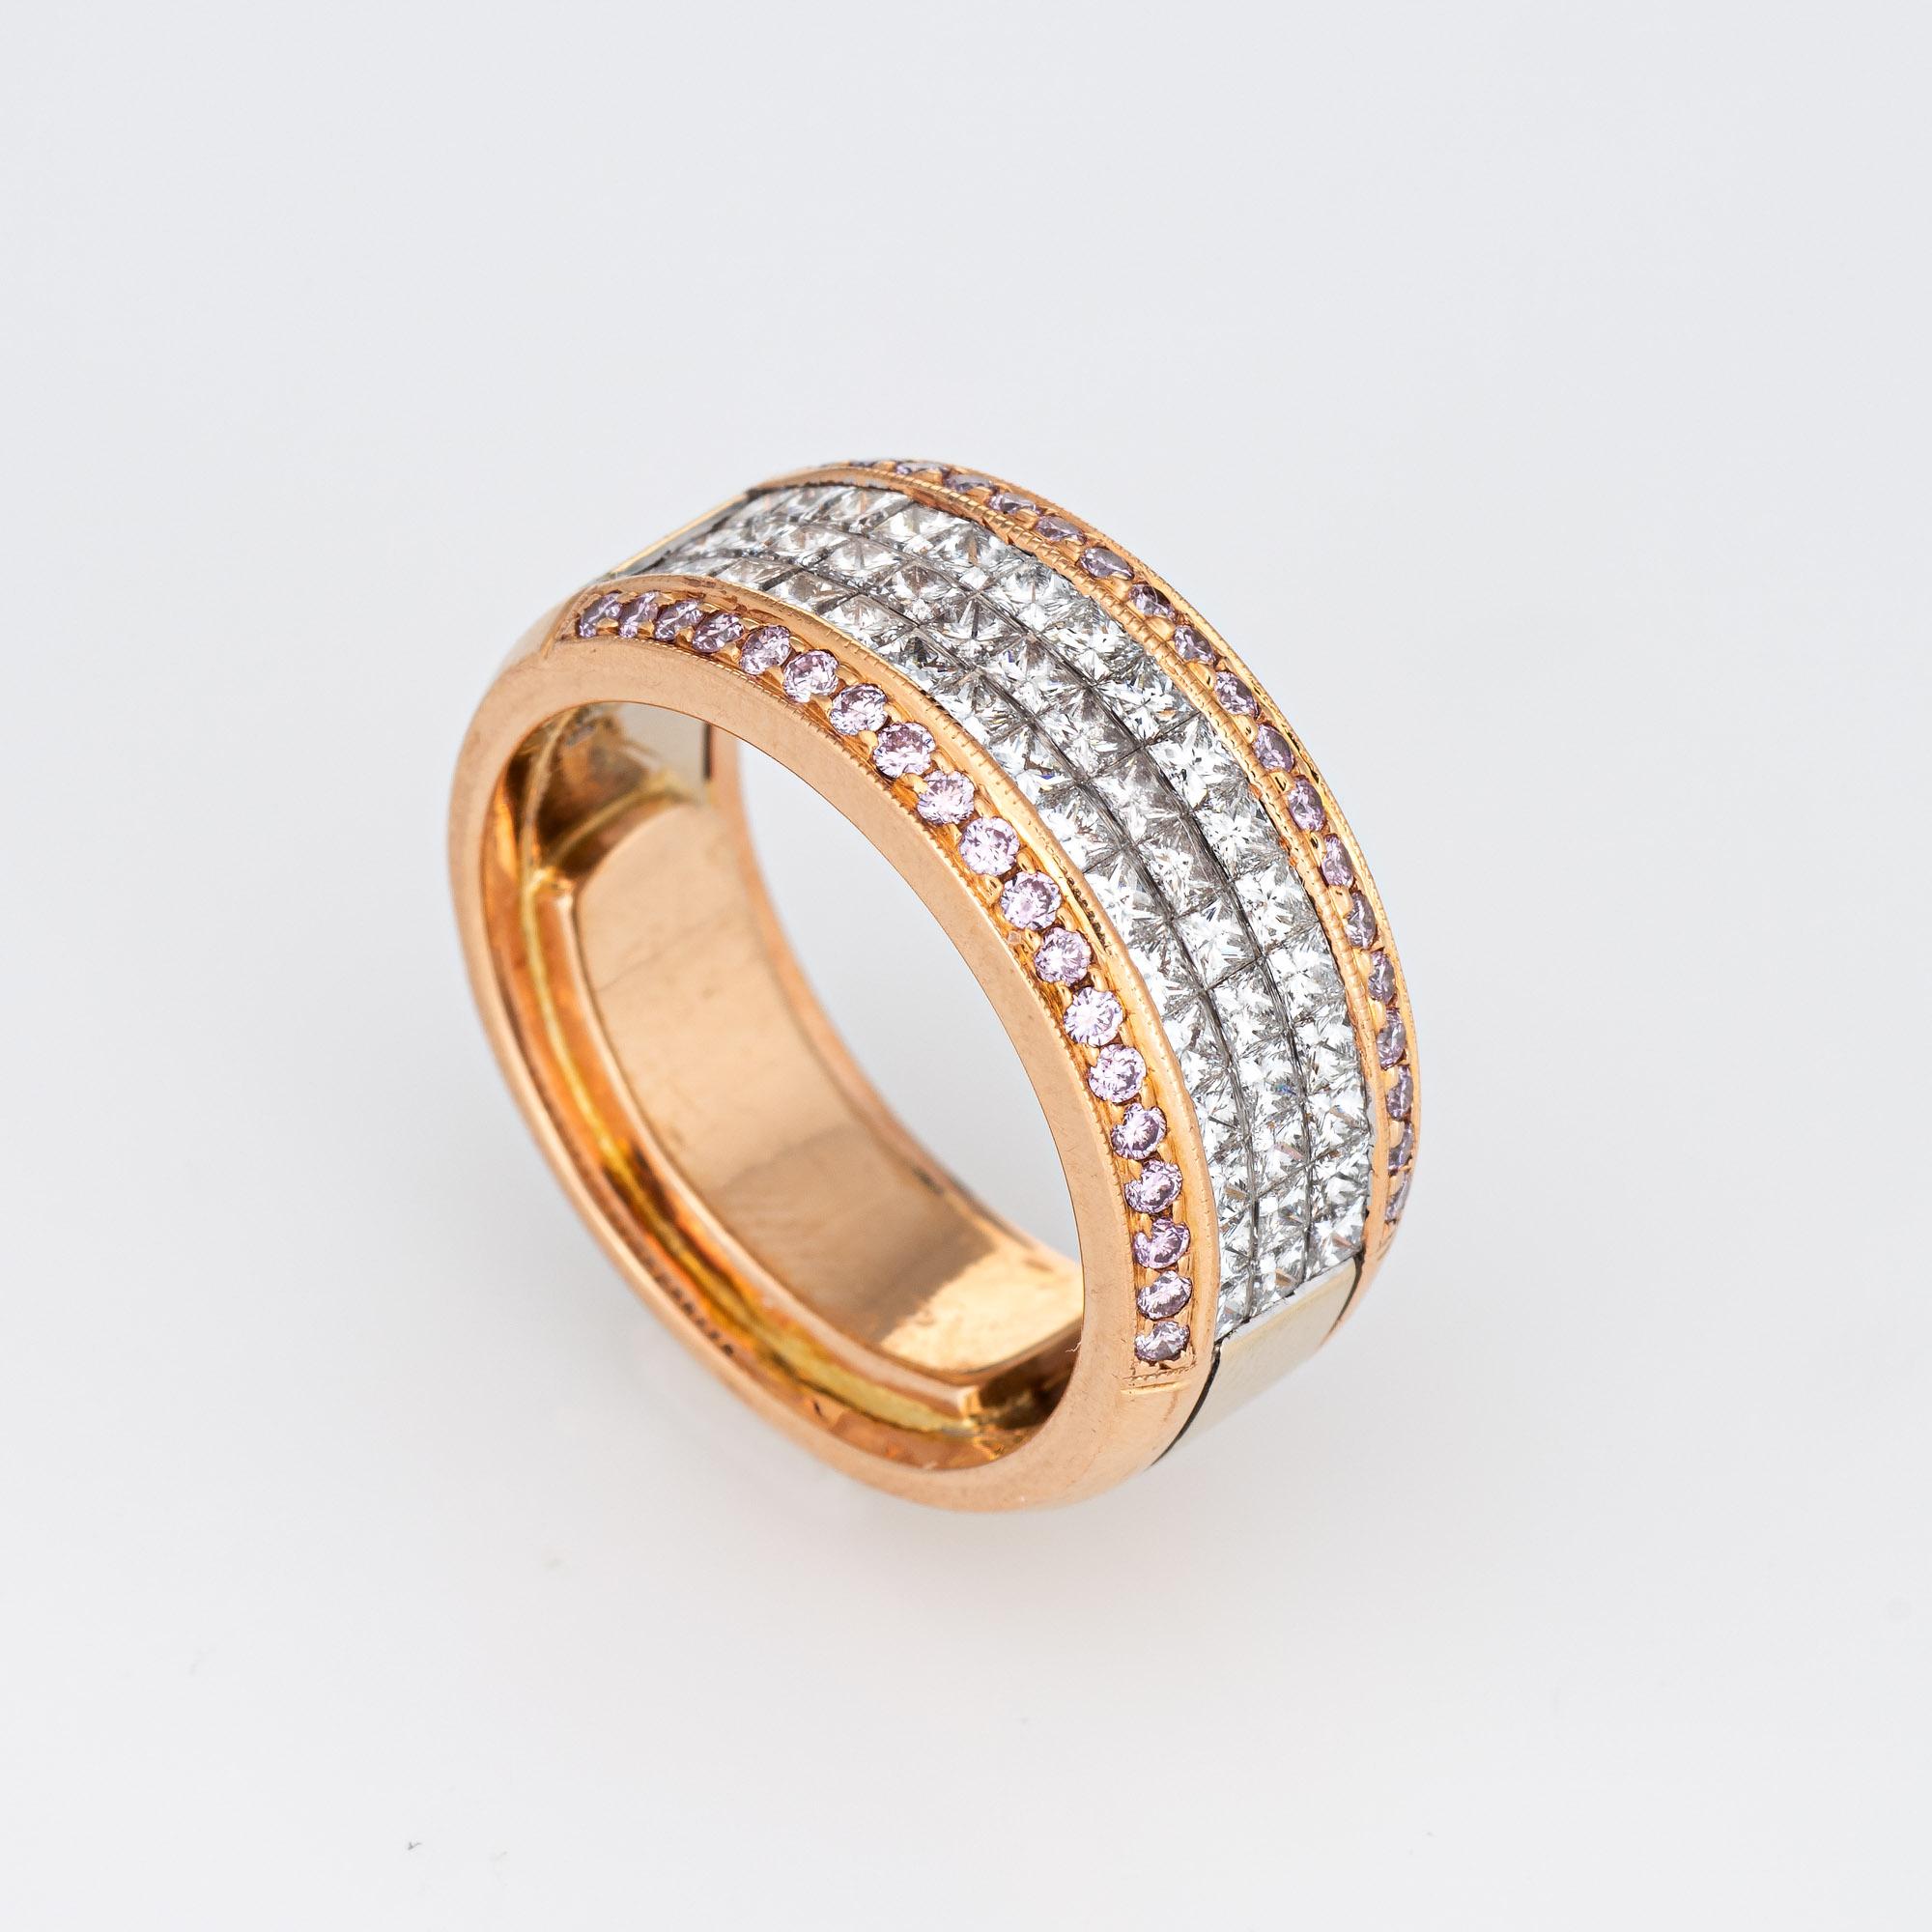 Elegantes Armband Simon G aus der Kollektion Caviar, gefertigt aus 18 Karat Rosé- und Weißgold. 

Die Diamanten im Princess-Schliff haben insgesamt 1,36 Karat (geschätzte Farbe G und Reinheit VS2-SI1). Die rosa Diamanten haben einen geschätzten Wert